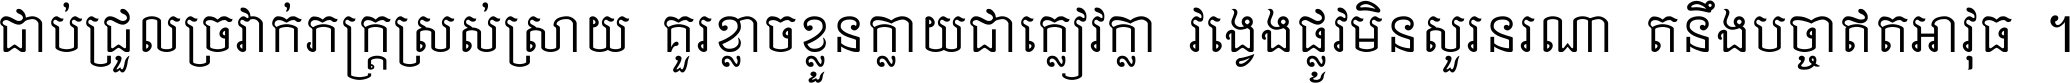 Khmer Mondulkiri U OT ls